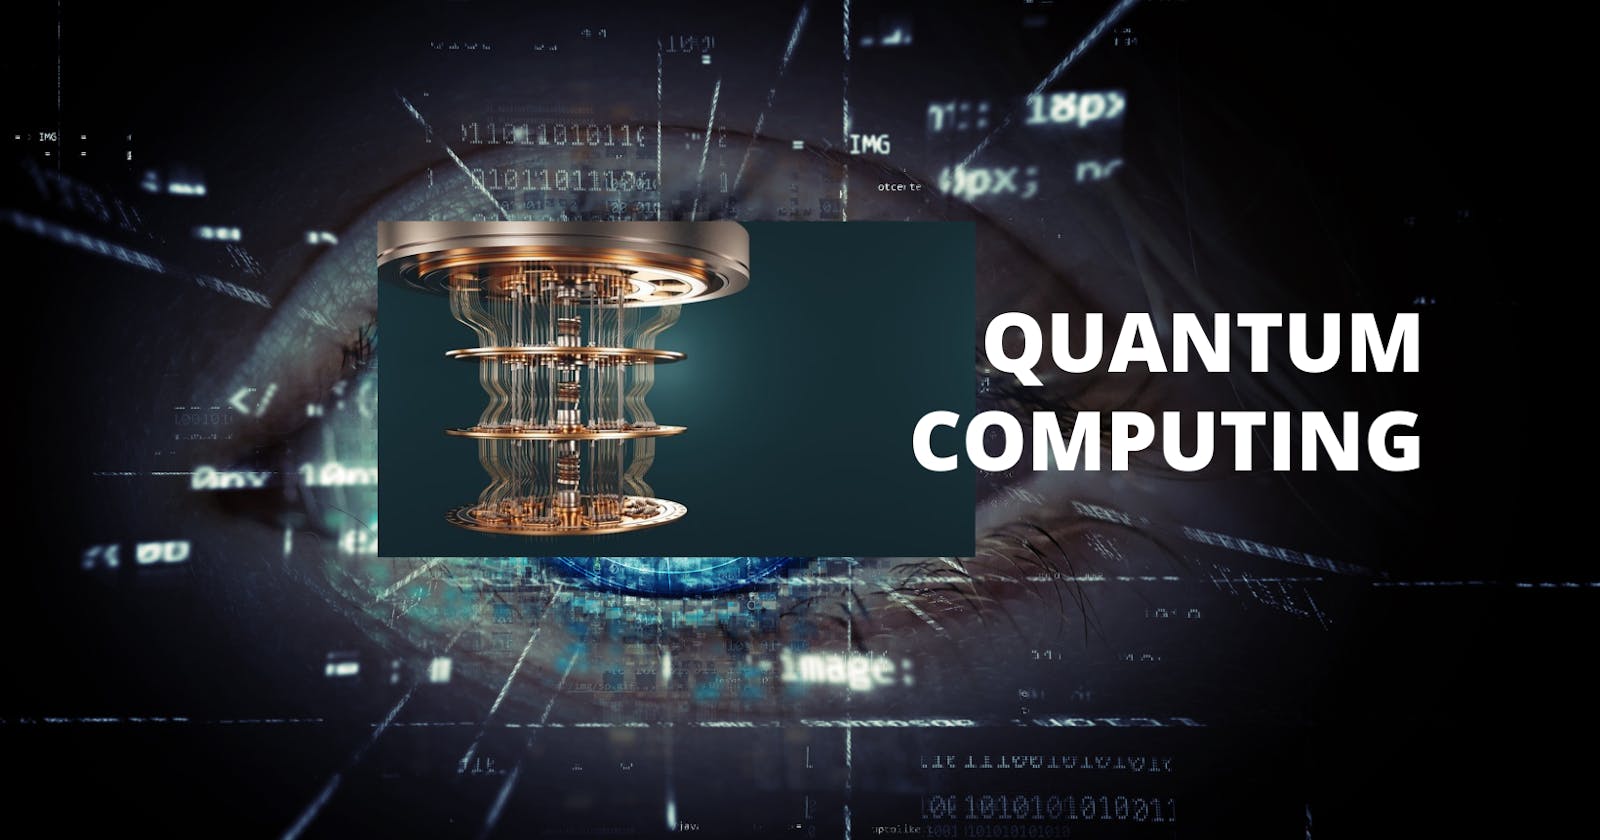 Quantum Computing in simple words